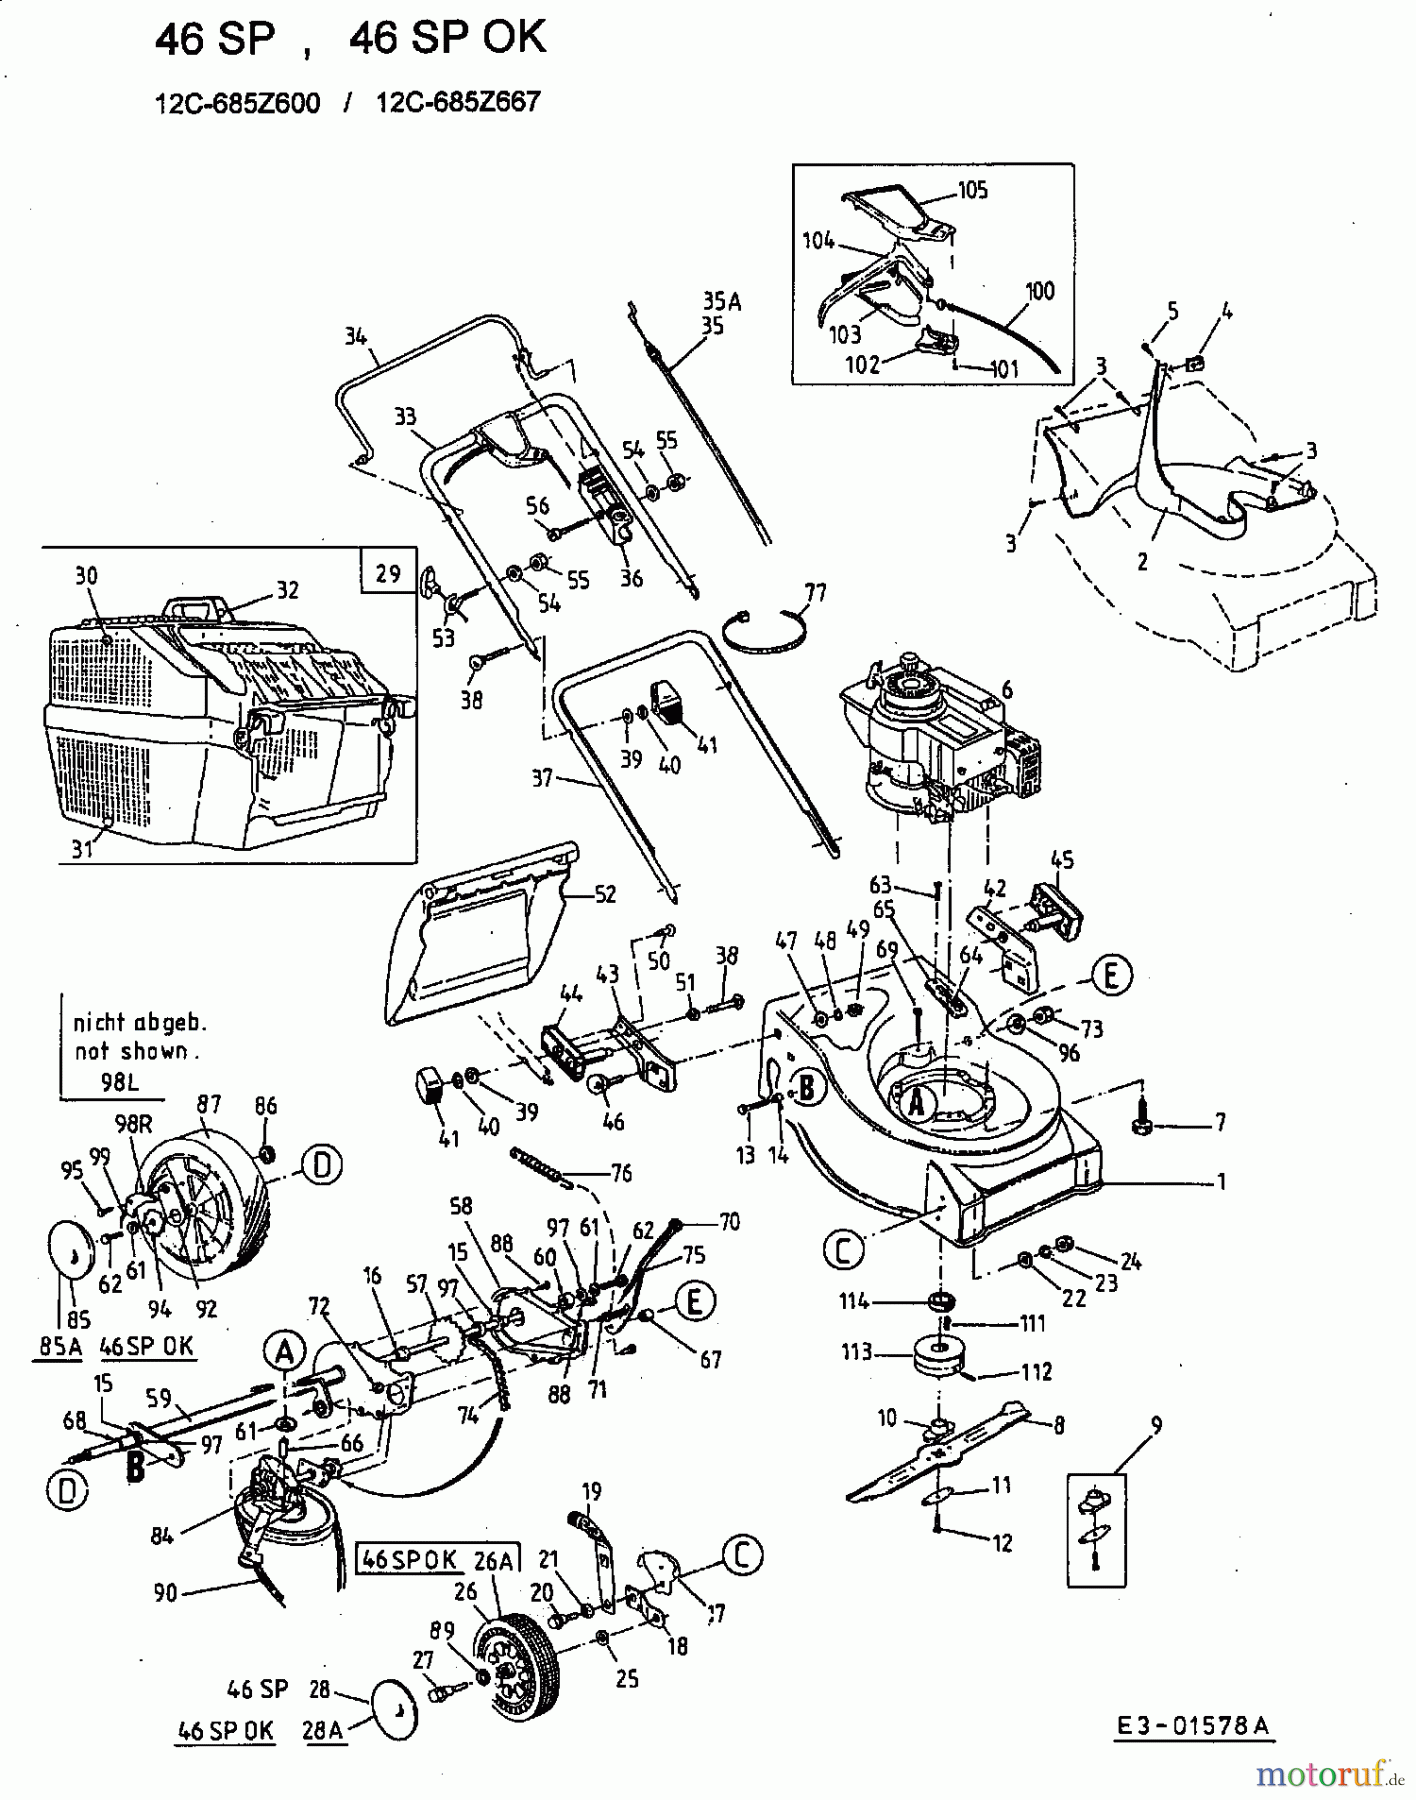  Ok Motormäher mit Antrieb 46 SP 12C-685Z667  (2001) Grundgerät